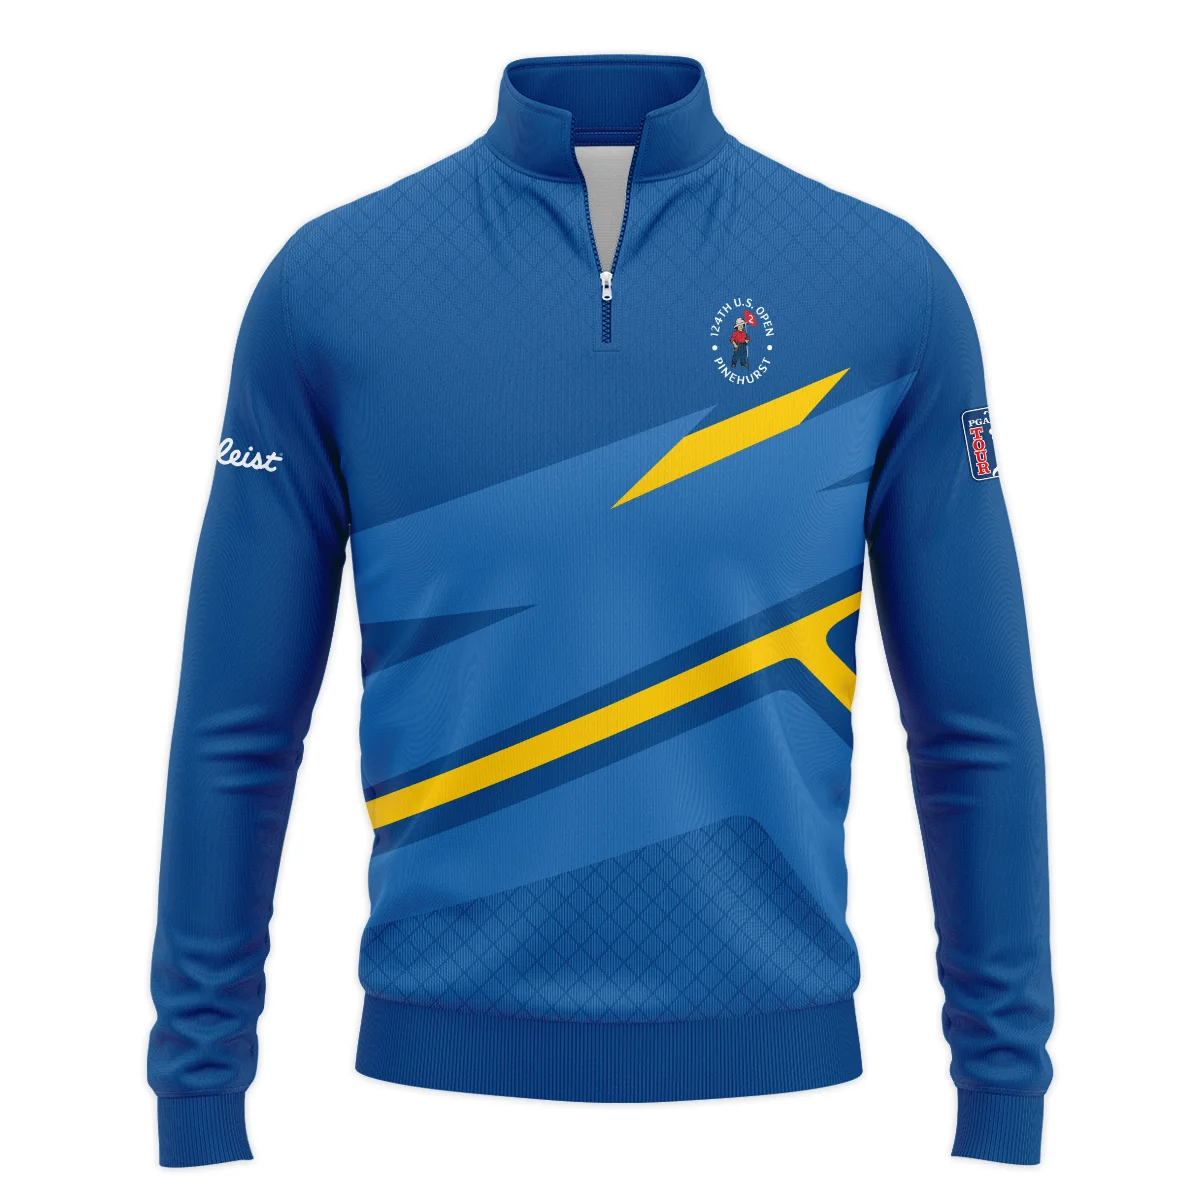 Titleist 124th U.S. Open Pinehurst Blue Yellow Mix Pattern Polo Shirt Style Classic